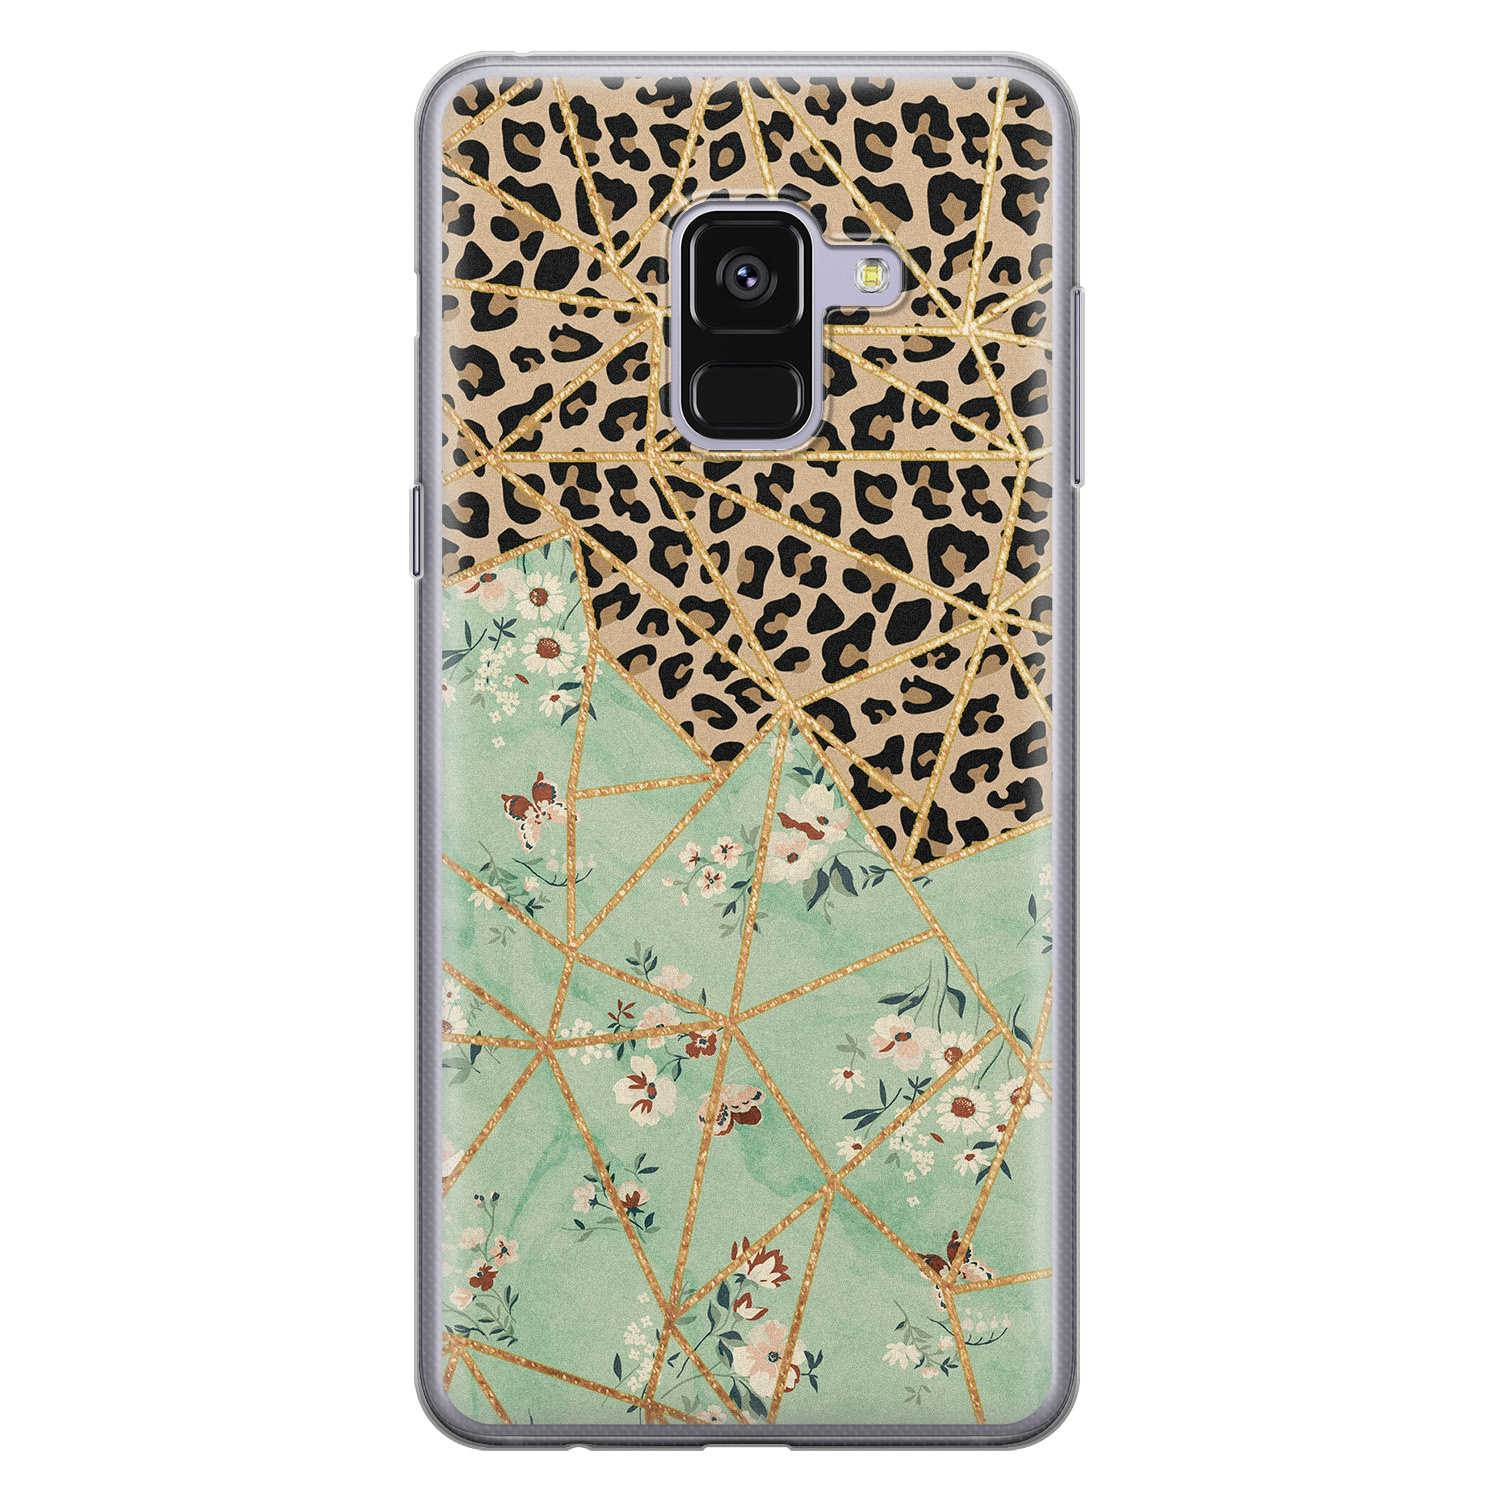 Leuke Telefoonhoesjes Samsung Galaxy A8 2018 siliconen hoesje - Luipaard flower print